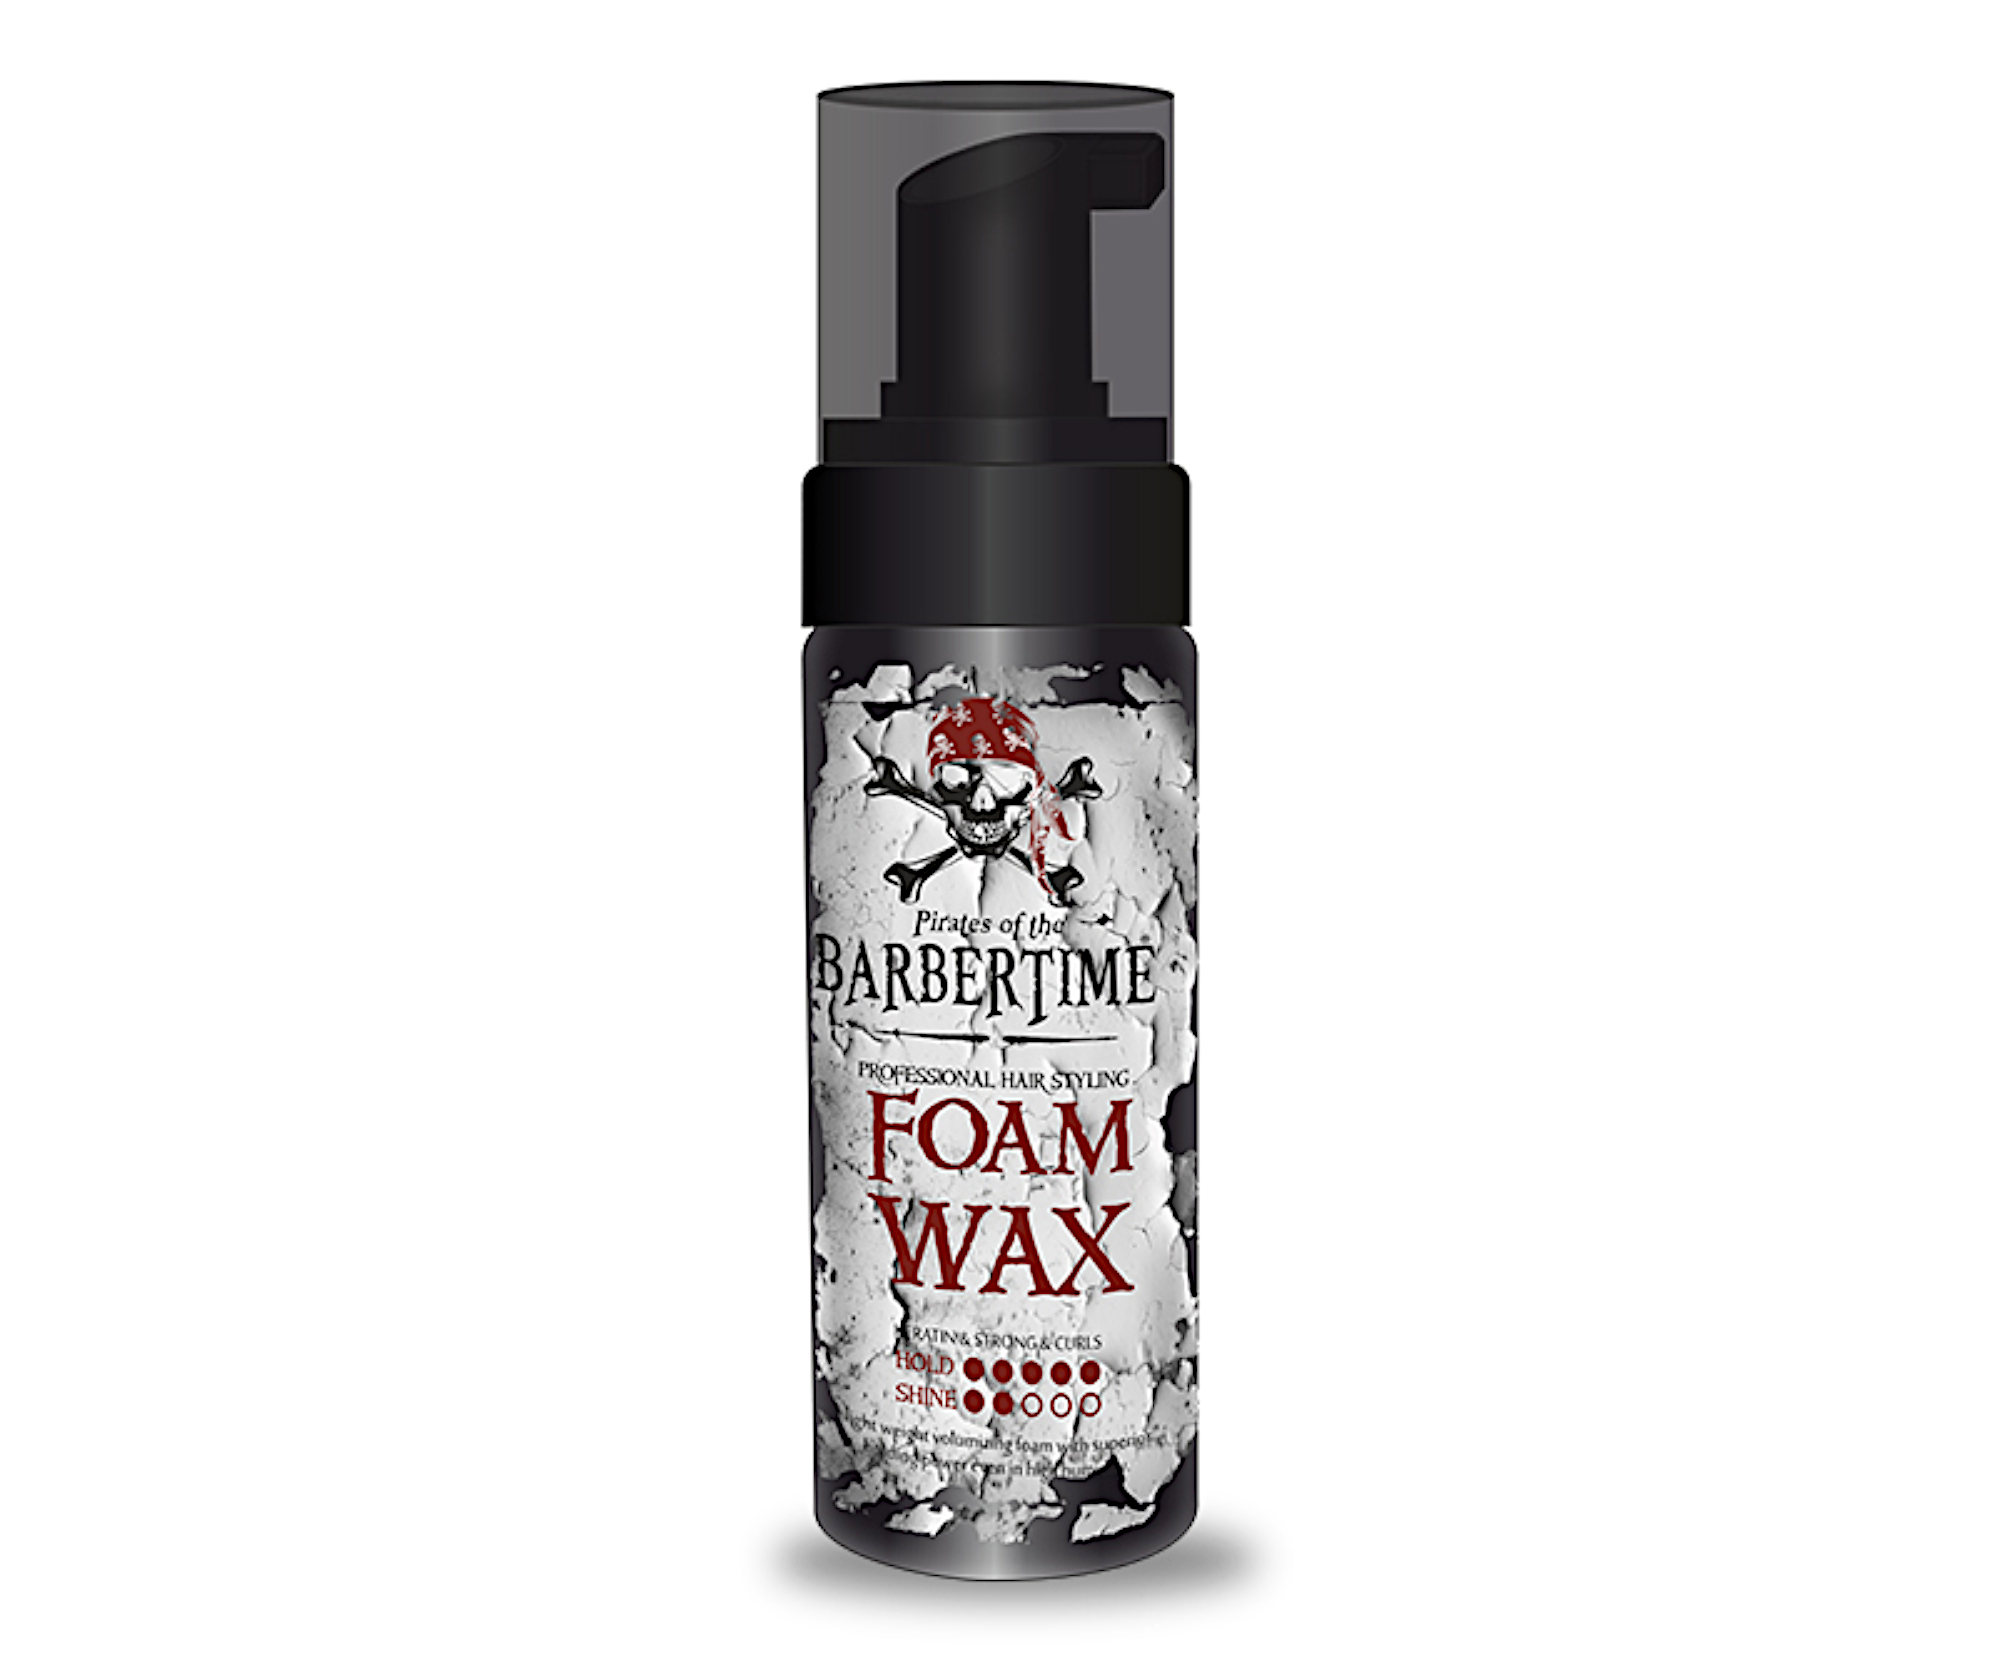 Pěnový vosk pro objem a definici vlasů Barbertime Foam Wax - 150 ml - Pirates of the Barbertime + dárek zdarma